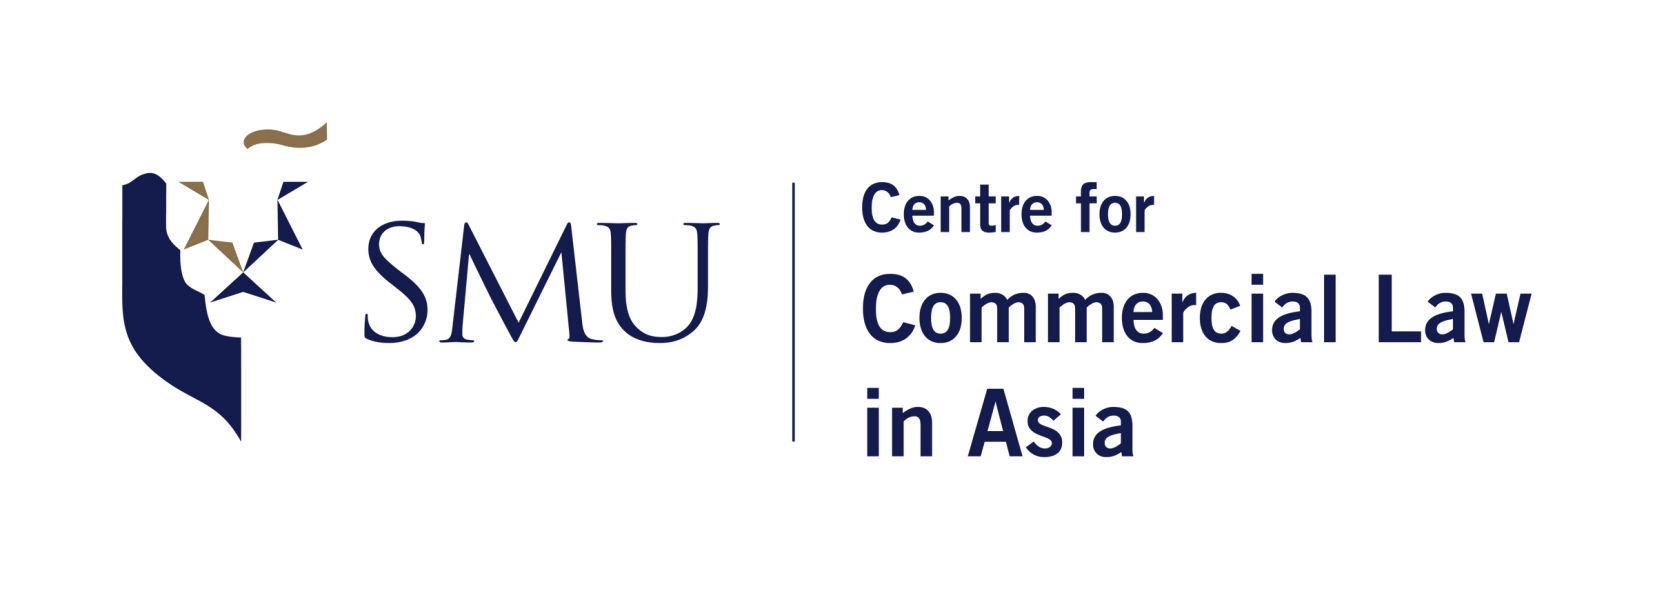 SMU Asia logo